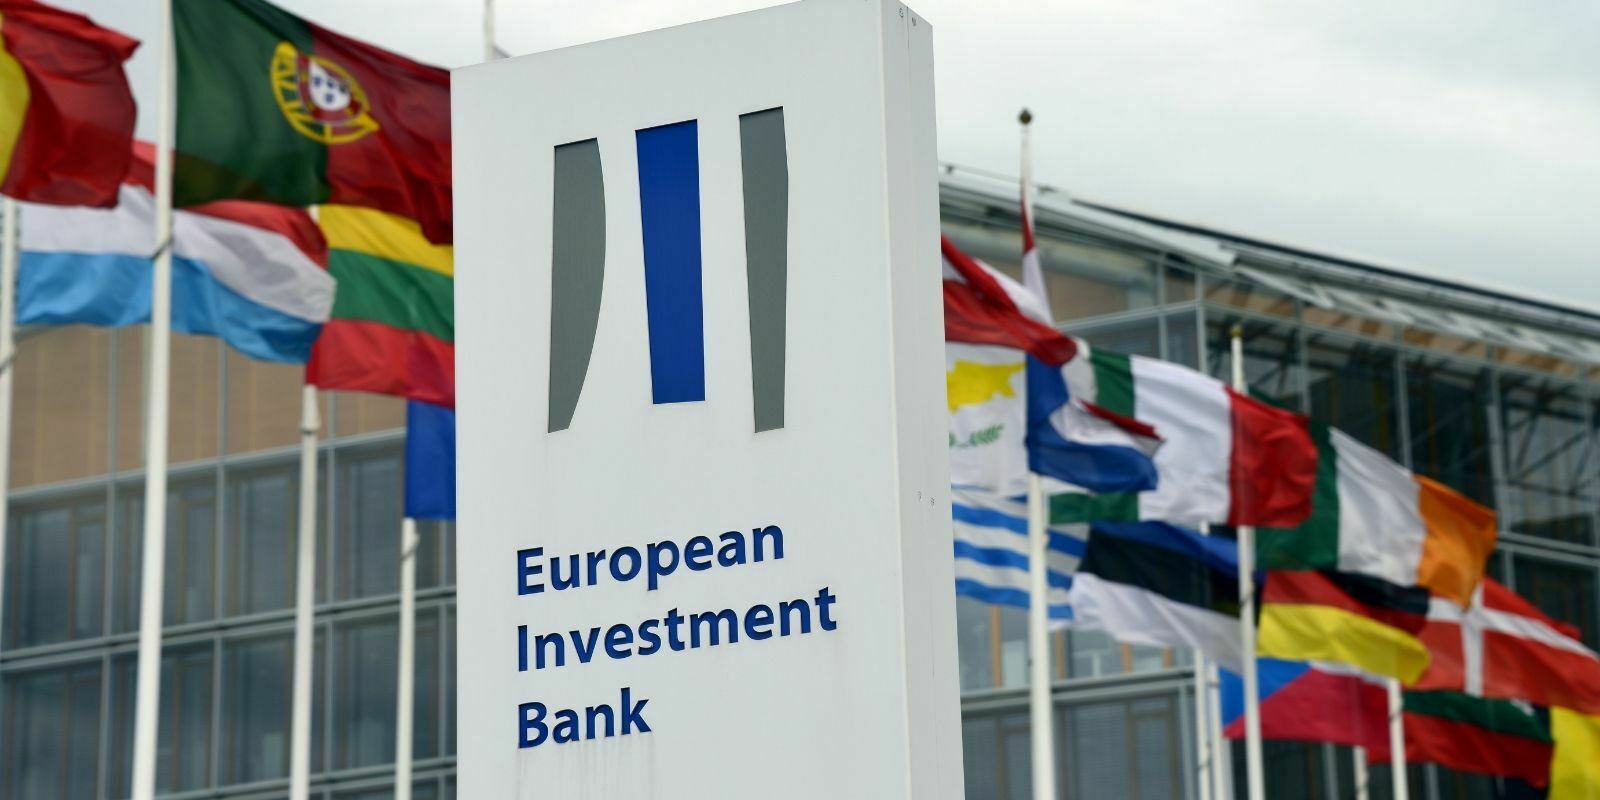 La Banque européenne d’investissement (BEI) va utiliser la blockchain pour l’émission d’obligations